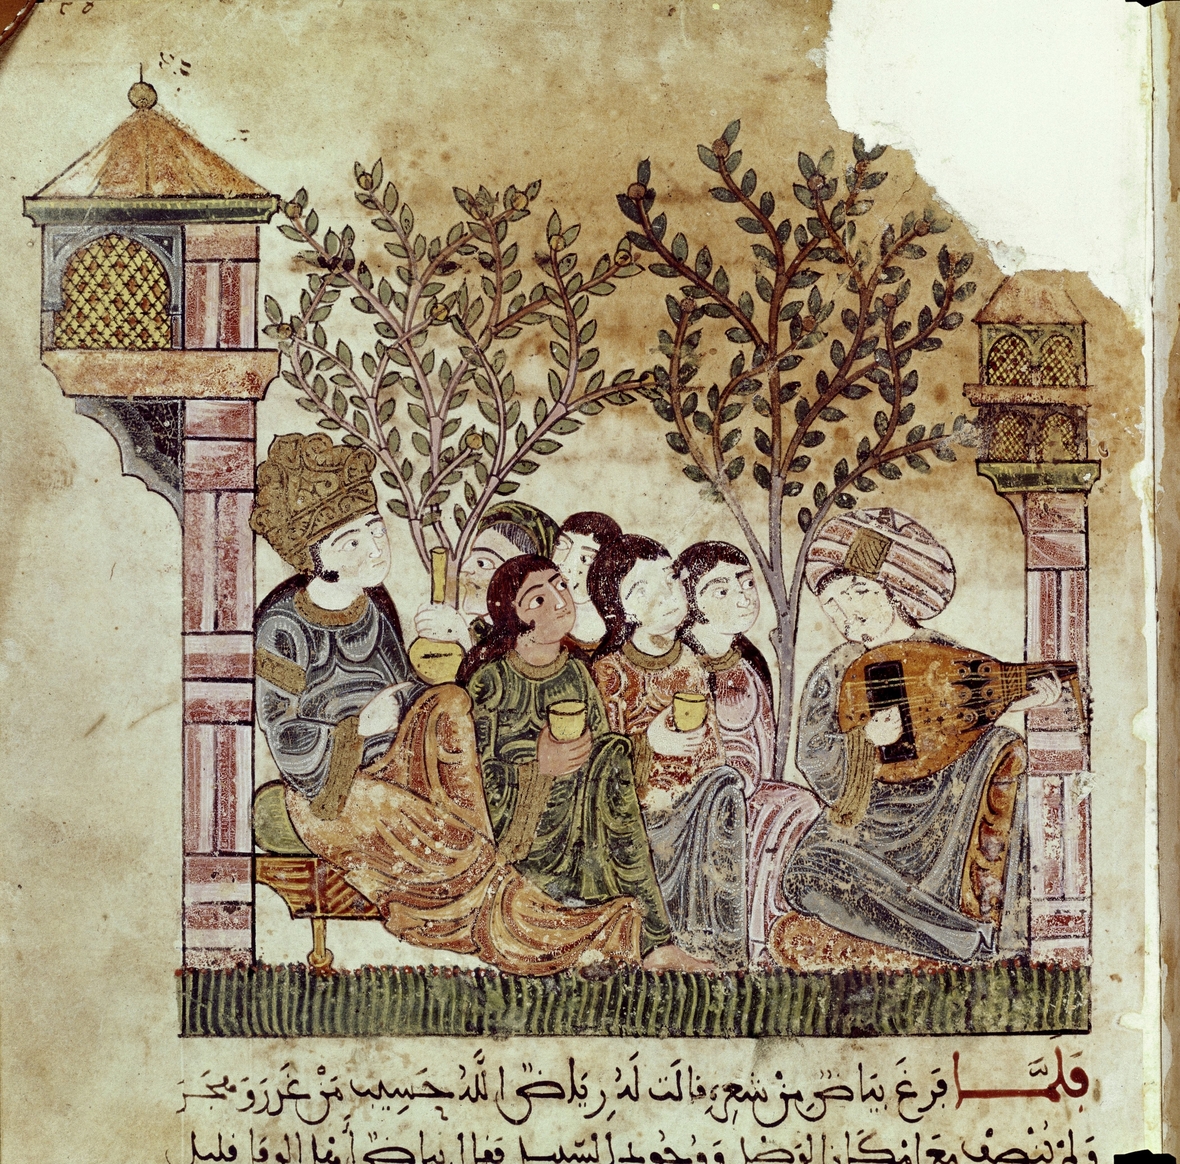 Bildliche Darstellung zu einer Hadith-Erzählung. Der Titel lautet: "Bayad singt zur Laute".